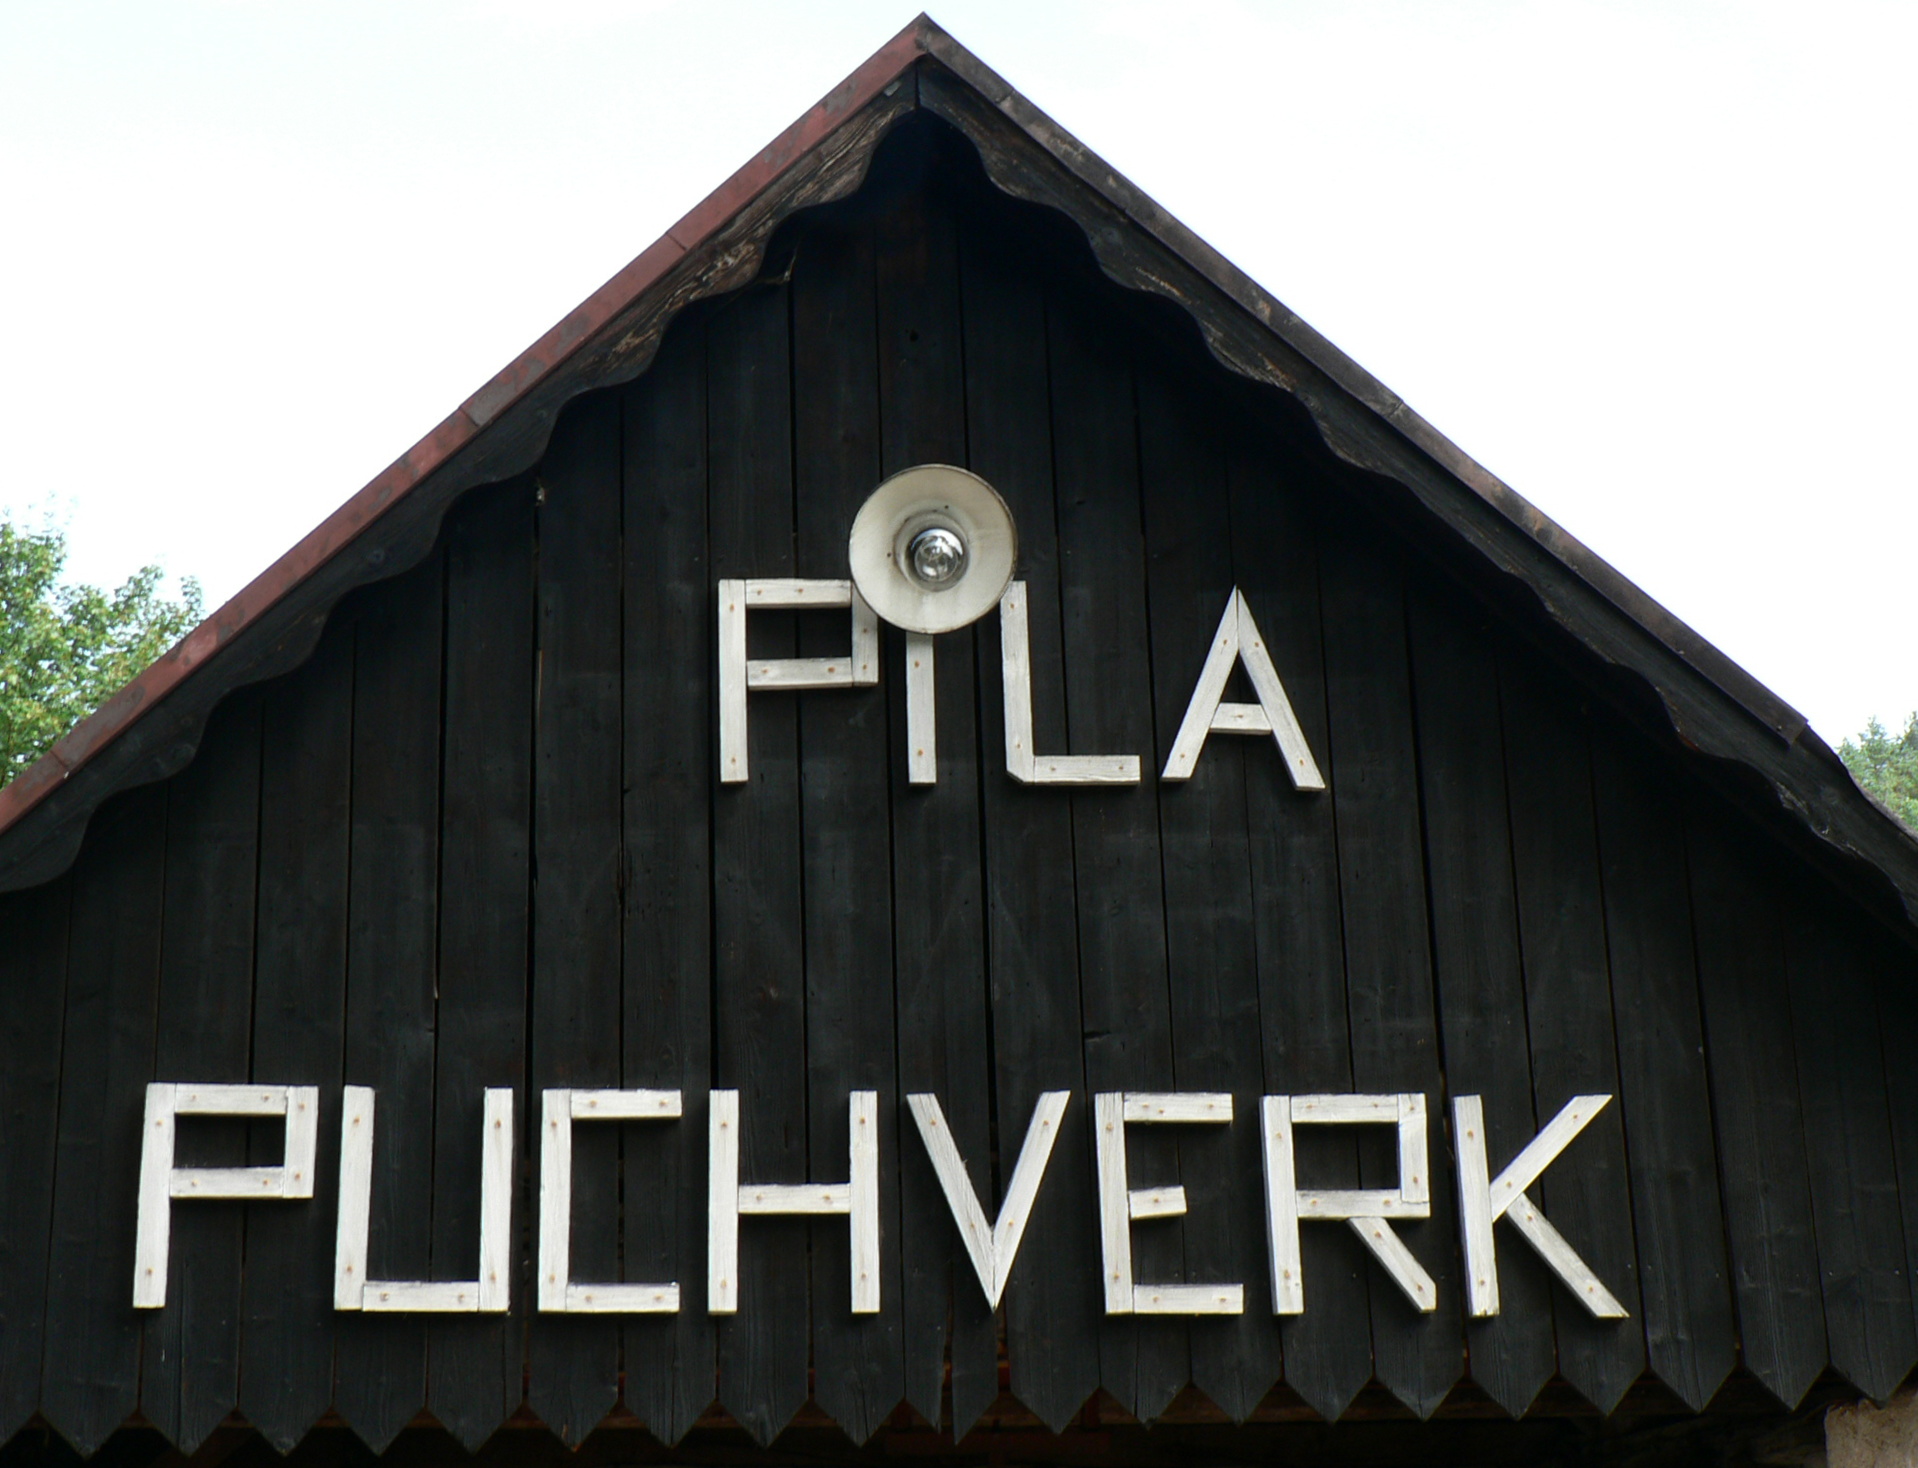 Pila Puchverk